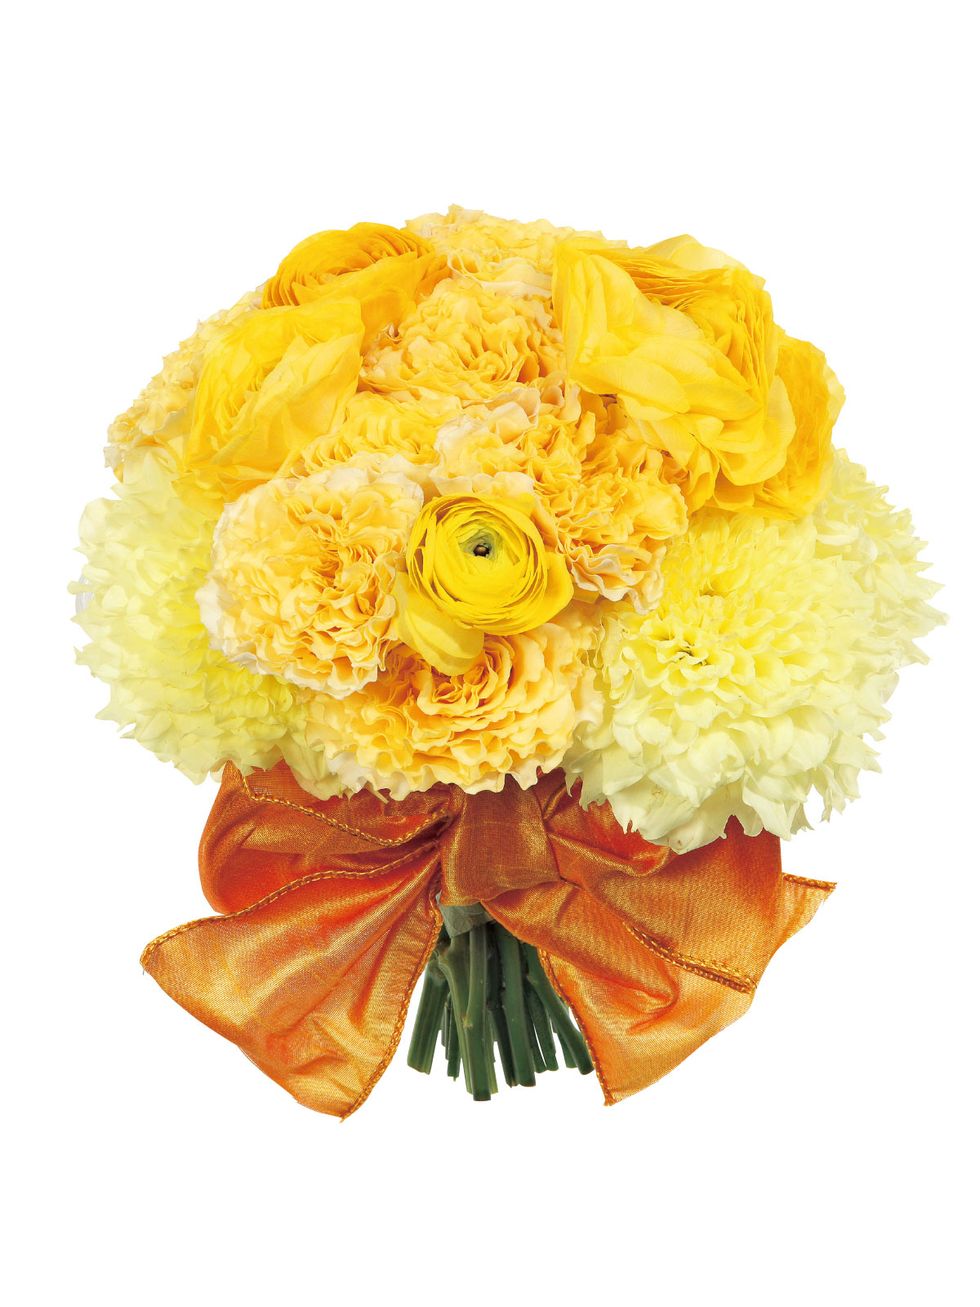 Petal, Yellow, Flower, Bouquet, Cut flowers, Flowering plant, Orange, Floristry, Flower Arranging, Floral design, 